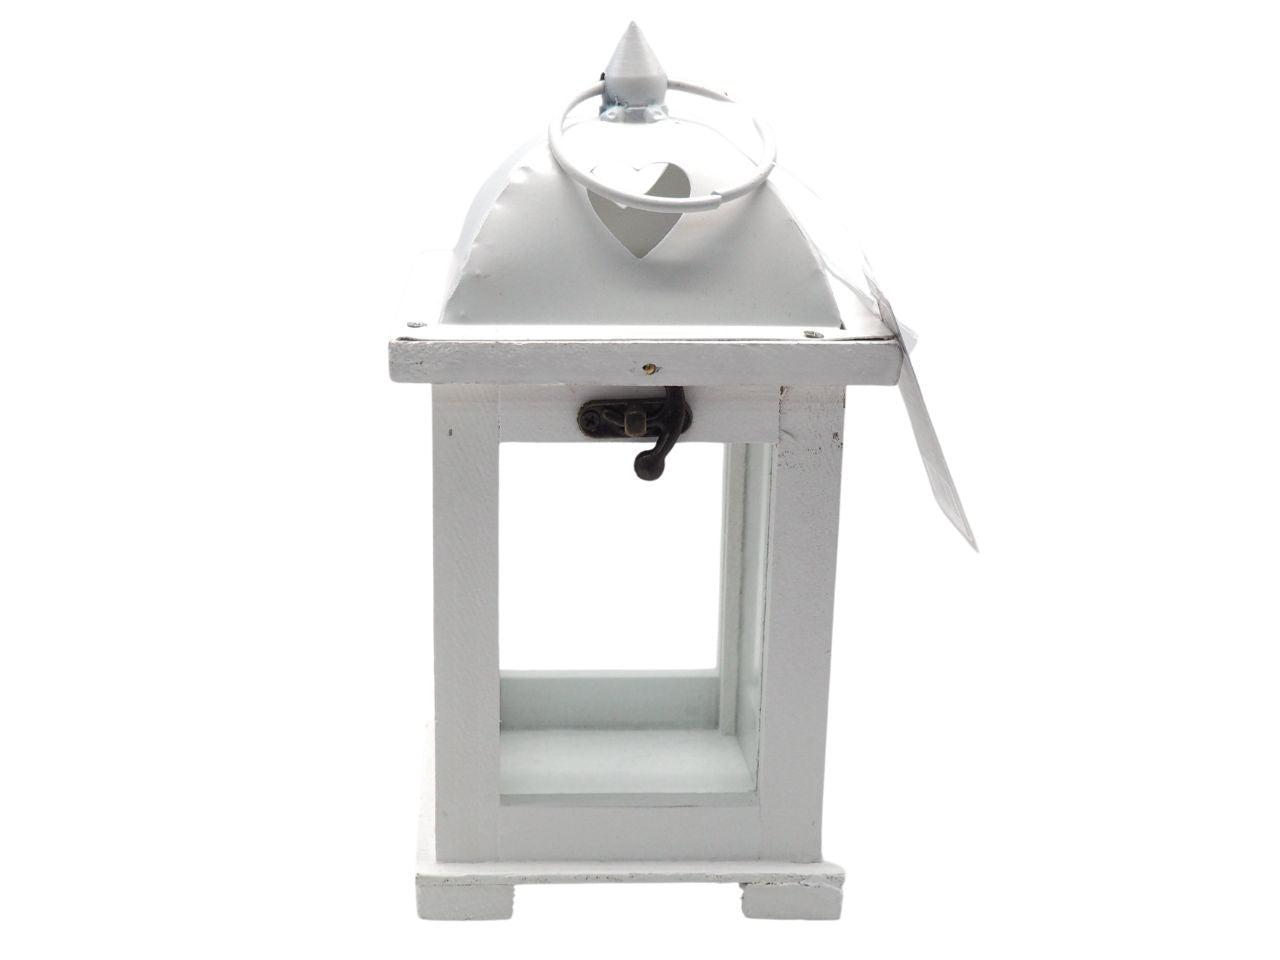 Lanterna arredo da tavolo in legno e metallo, shabby chic, bianca rettangolare per candela - 22x12x12cm - Creare